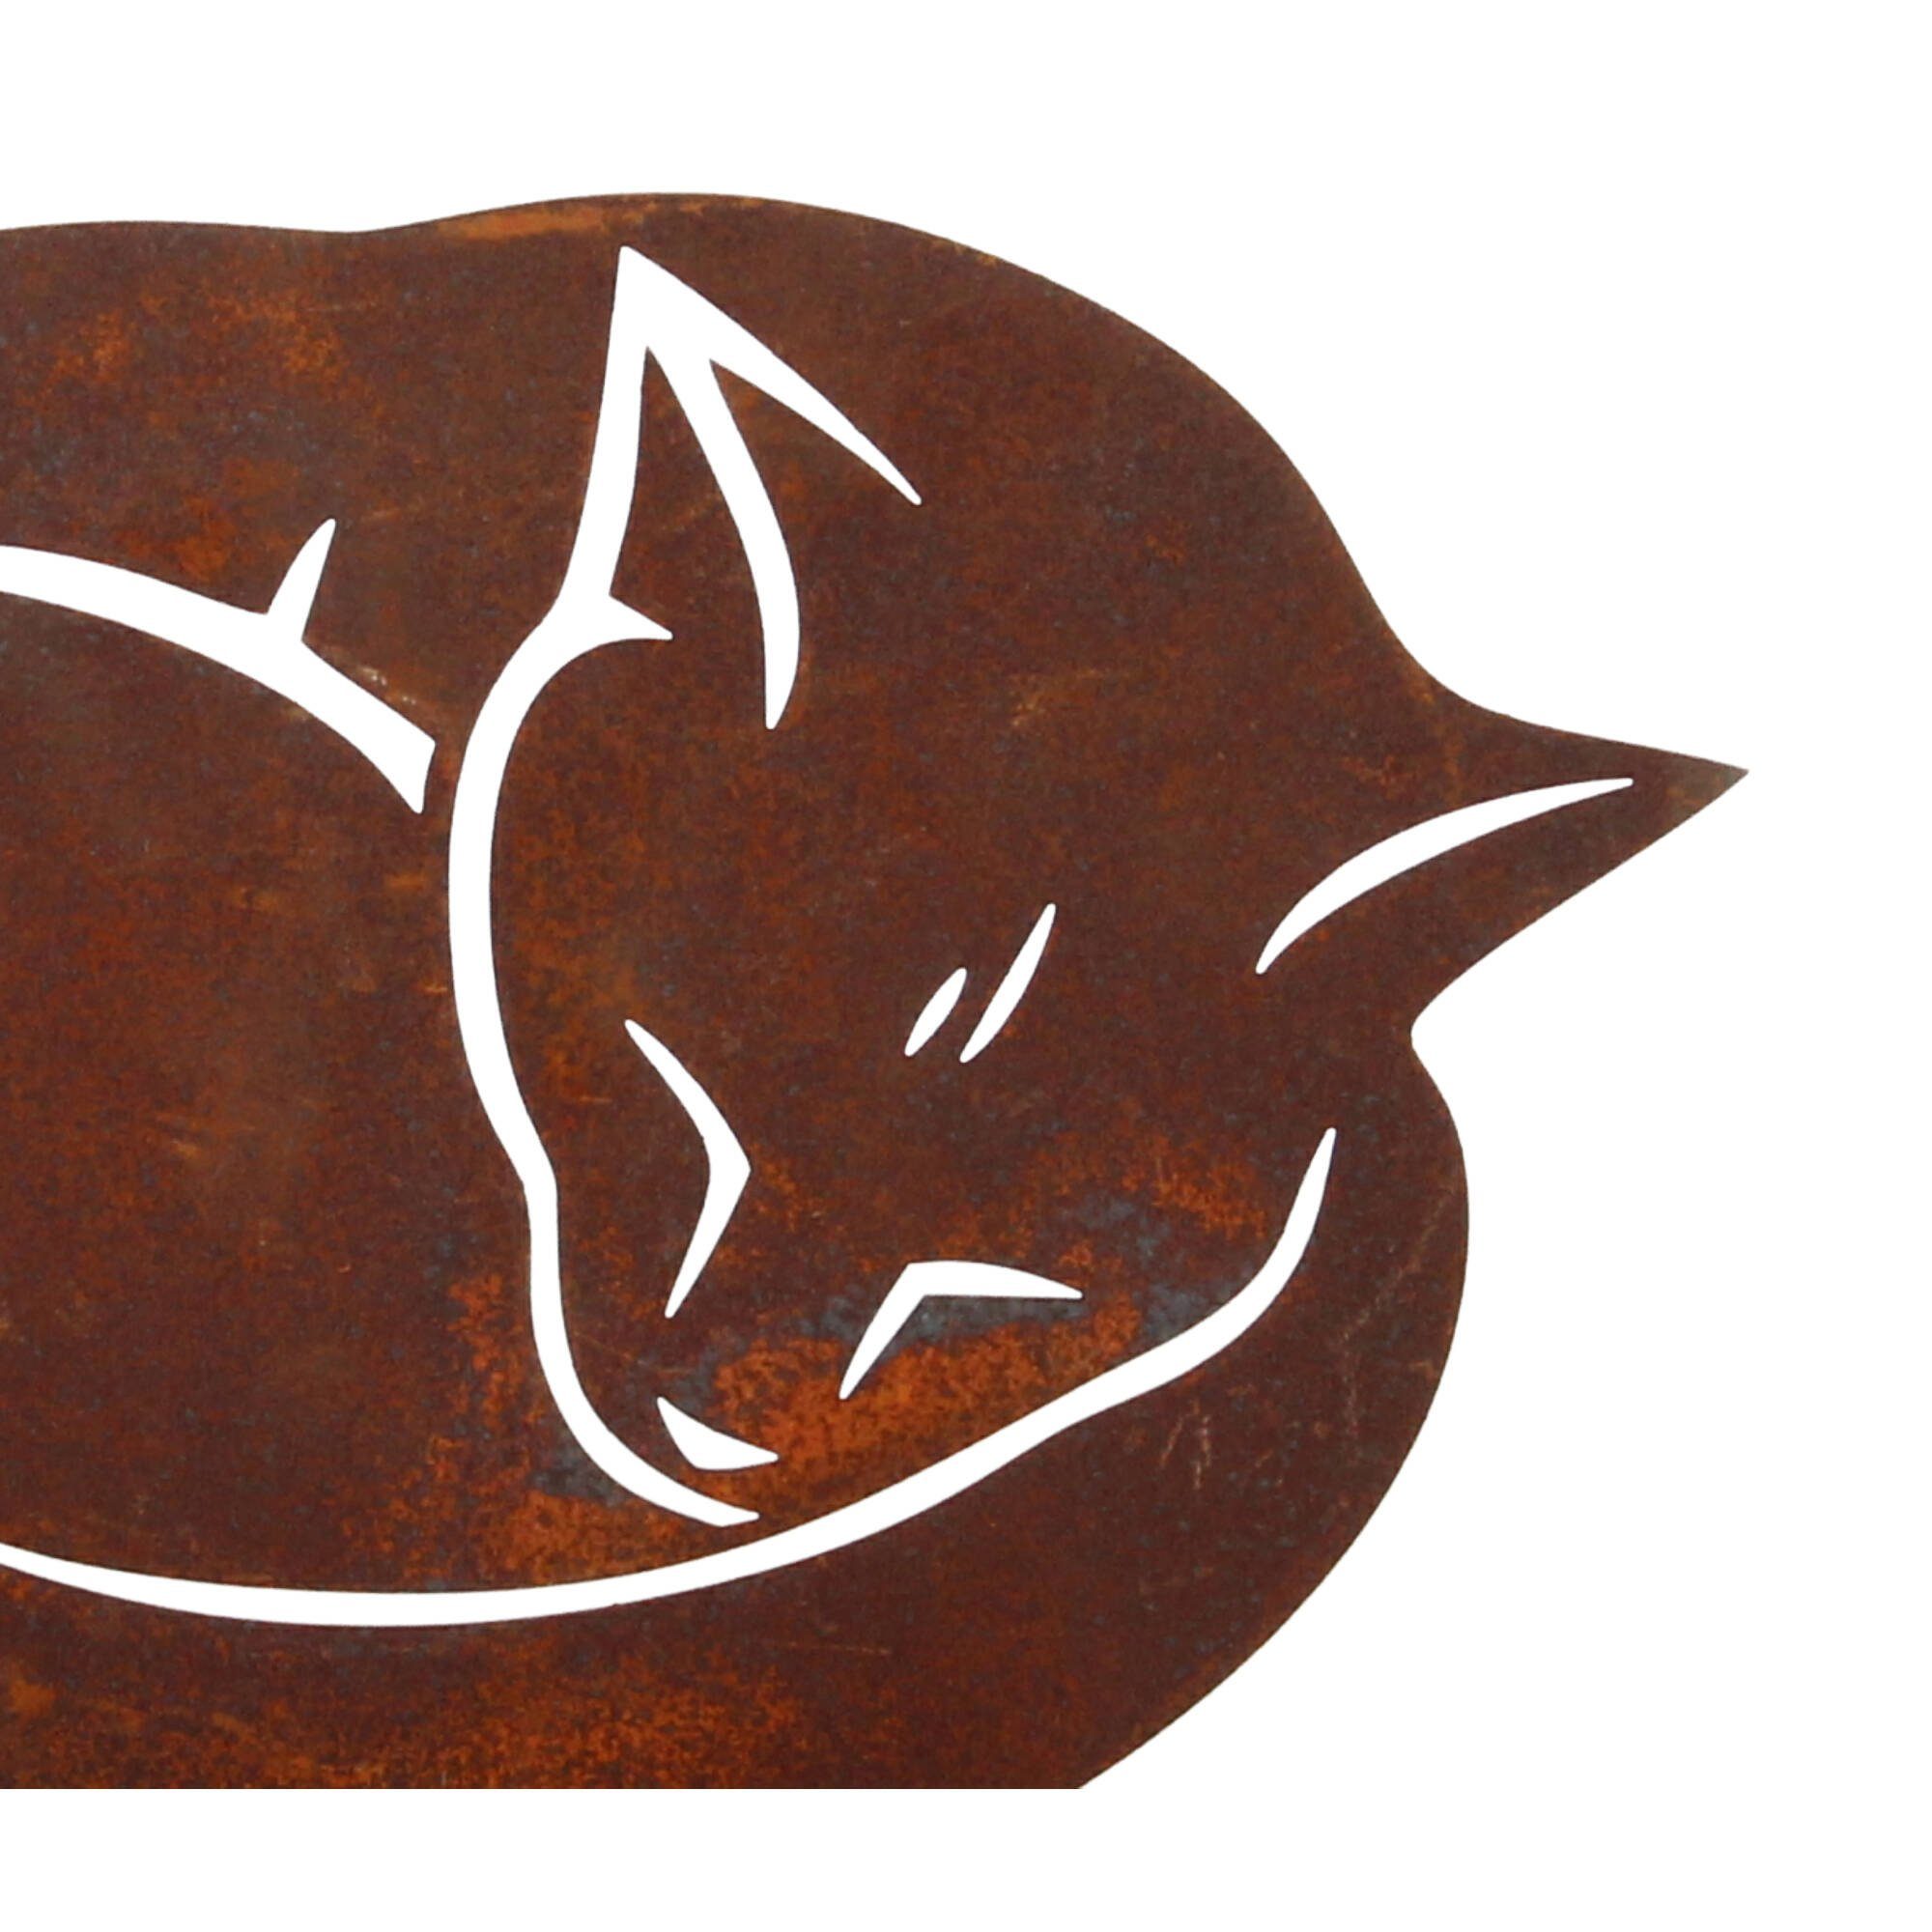 Platte auf Skulptur Katze Edelrost cm 25x17